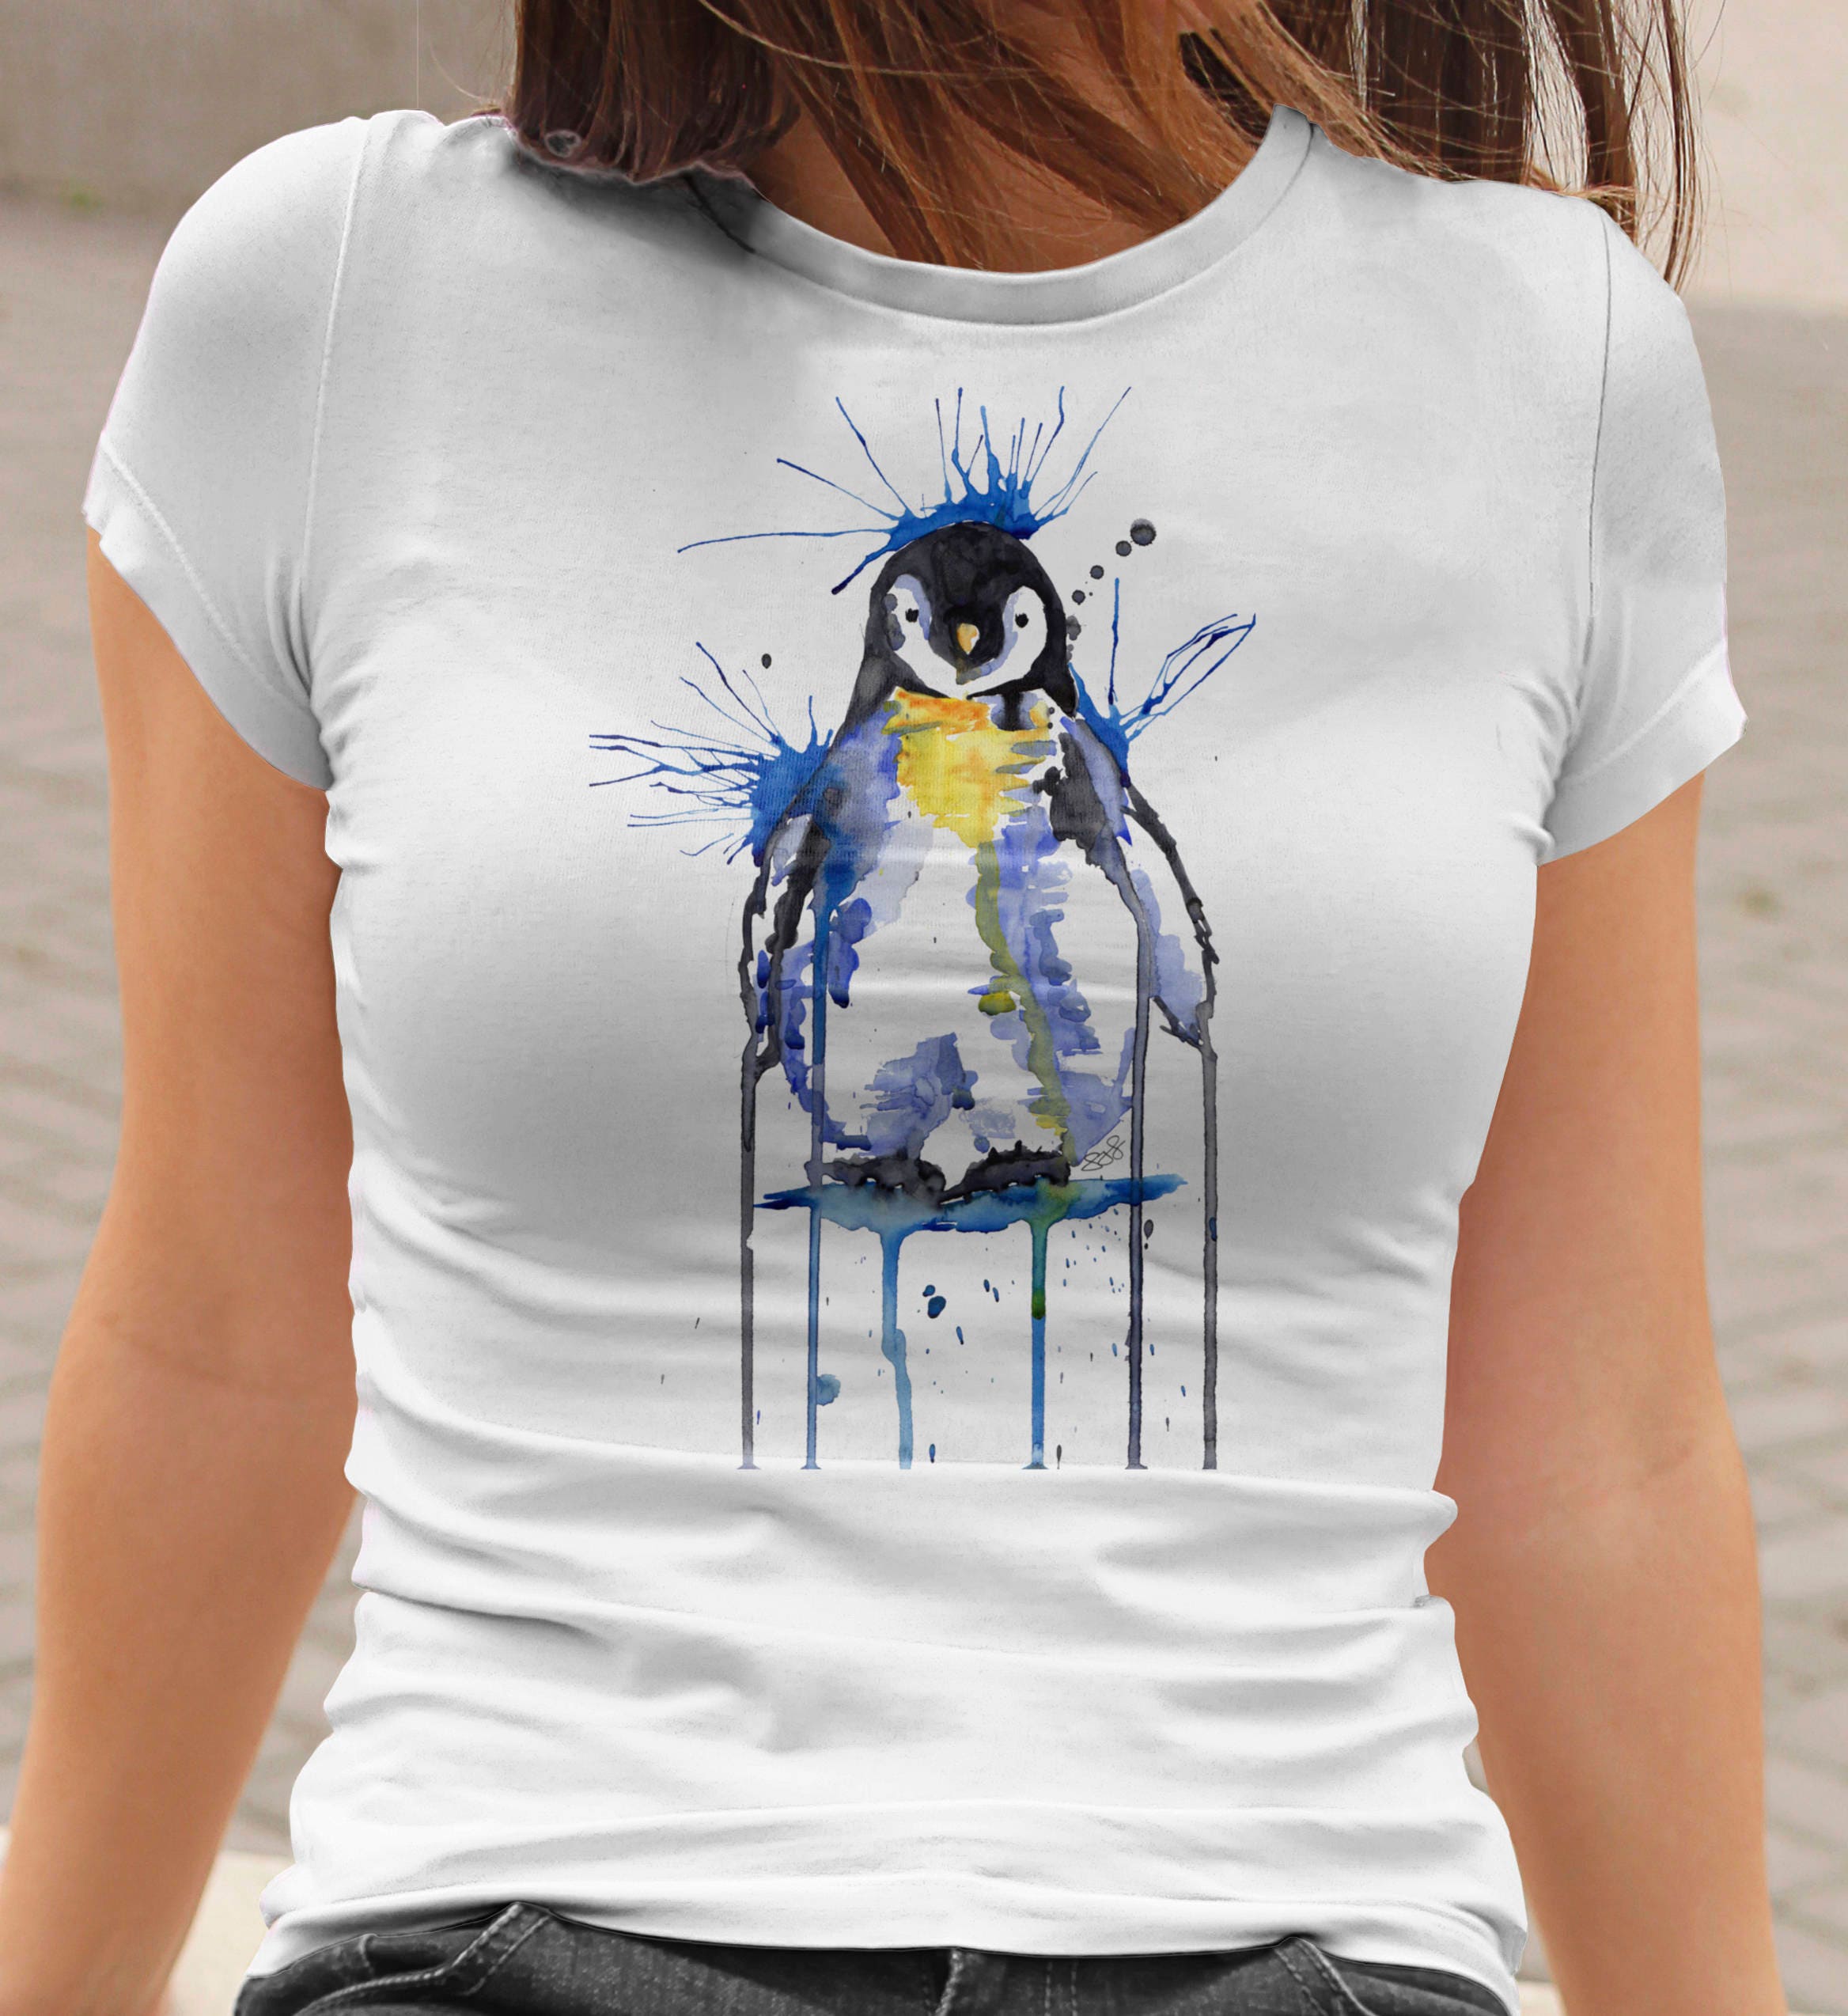 penguin t shirts uk